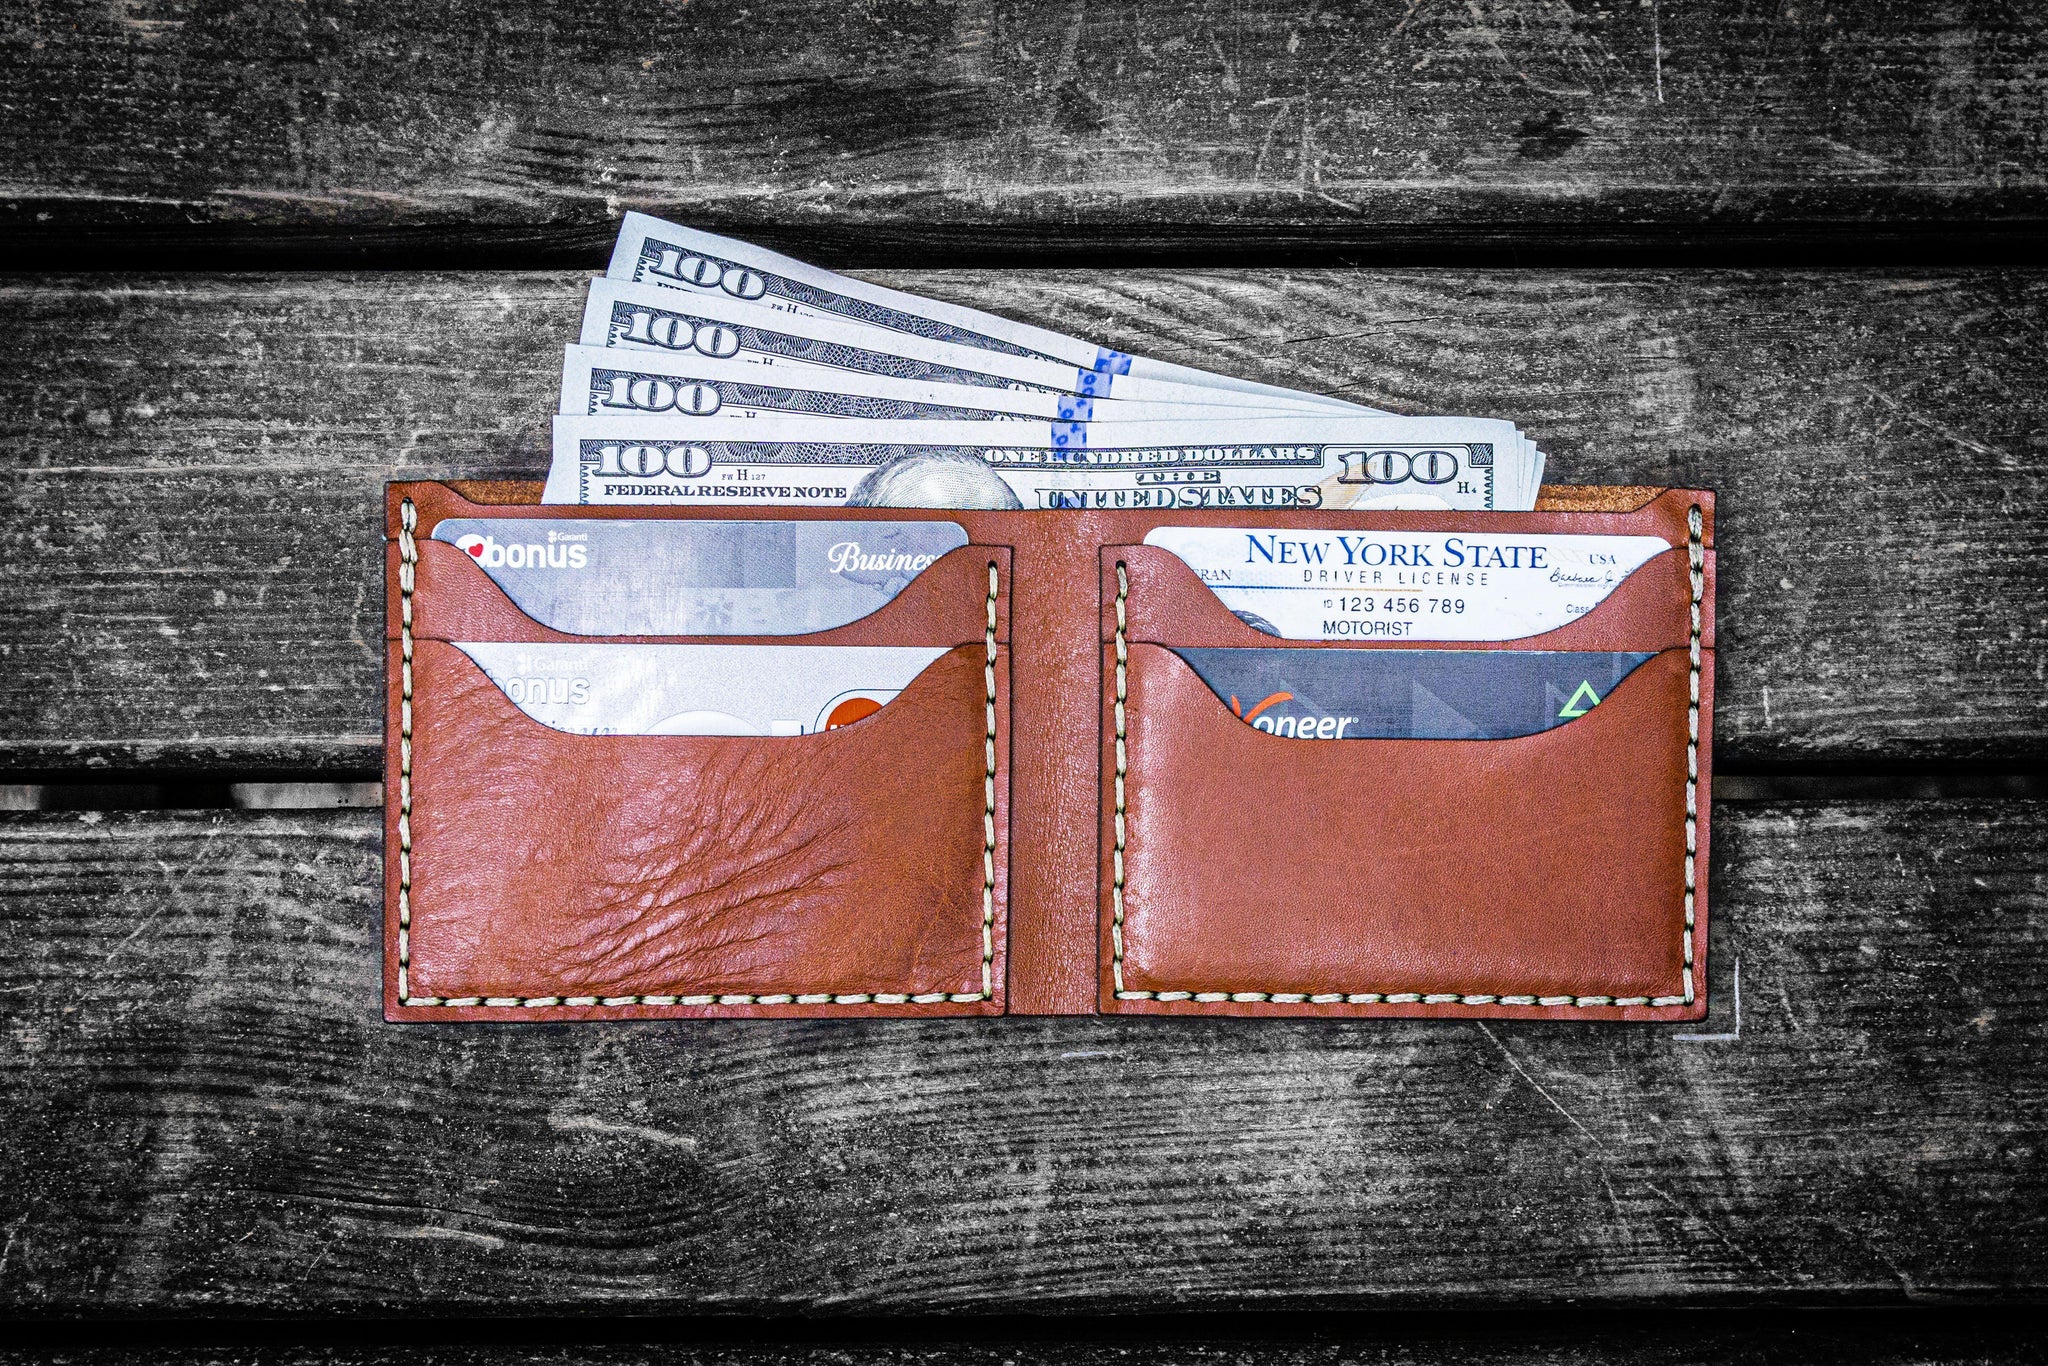 48 Elegant Wallet Designs Ideas For Men  Leather wallet, Best leather  wallet, Slim leather wallet